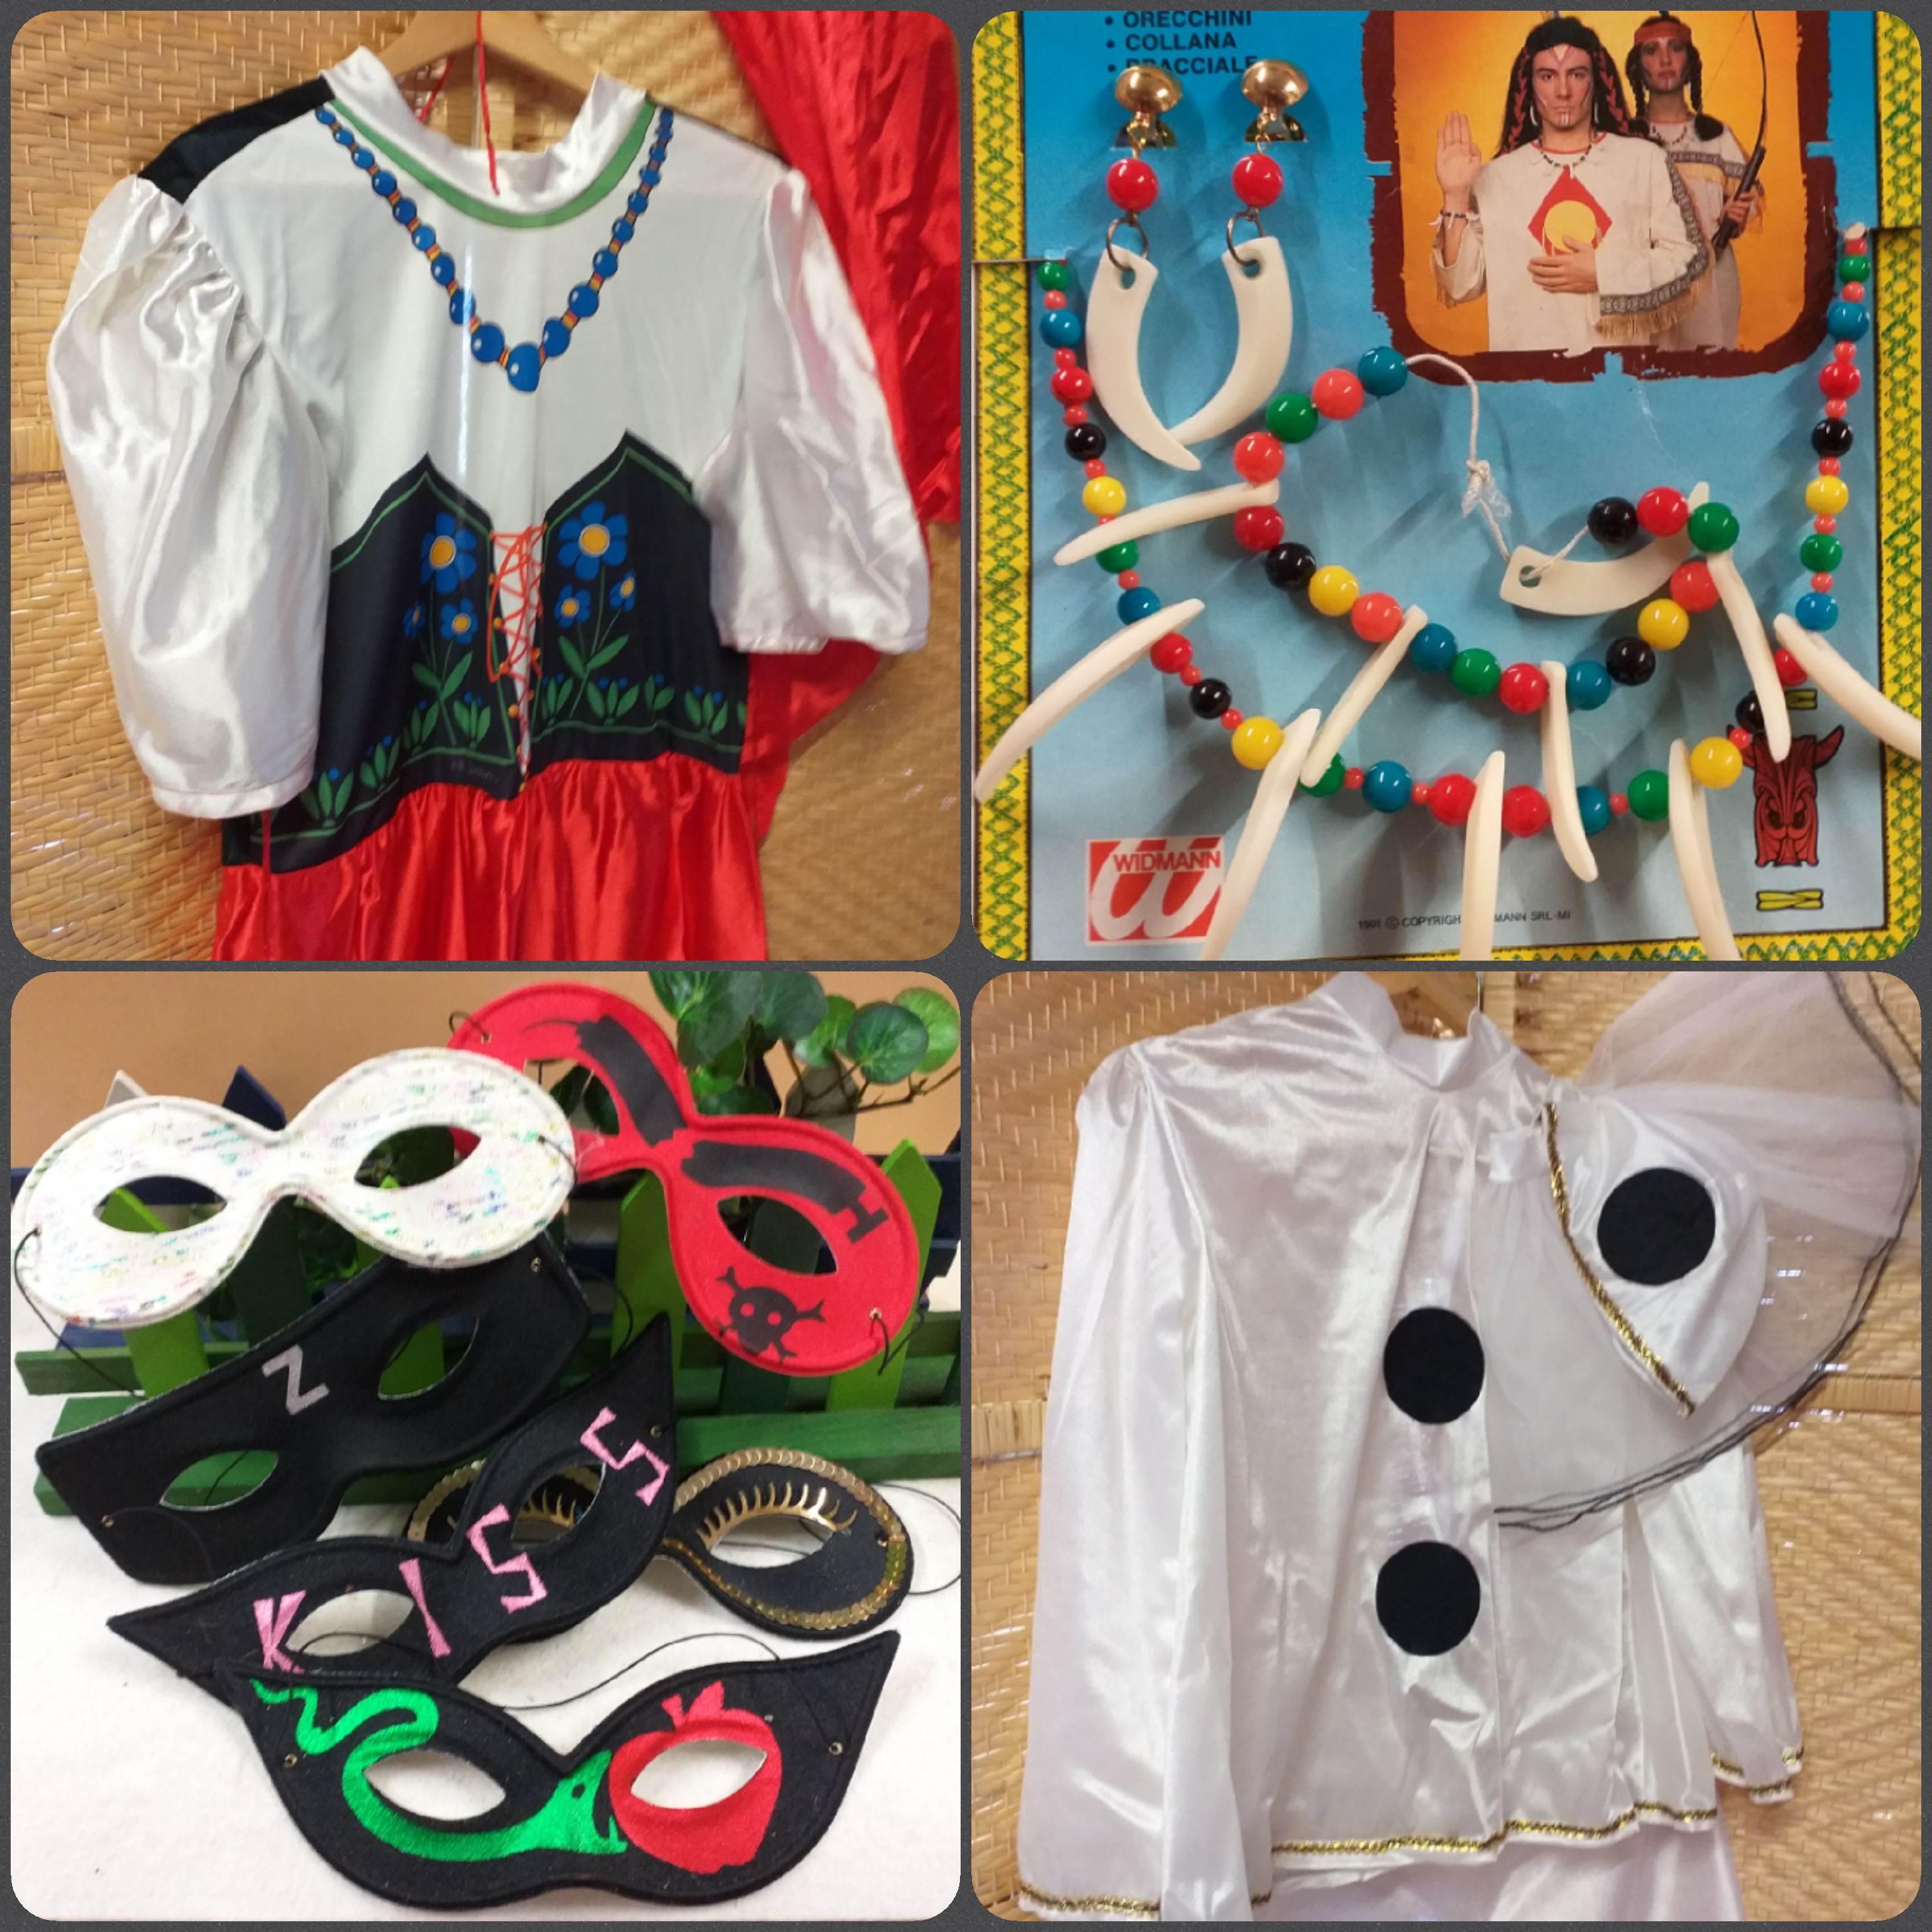 Accessori e costumi Carnevale fai da te maschere vestiti feste a tema –  Tagged ricamo-accessori – hobbyshopbomboniere